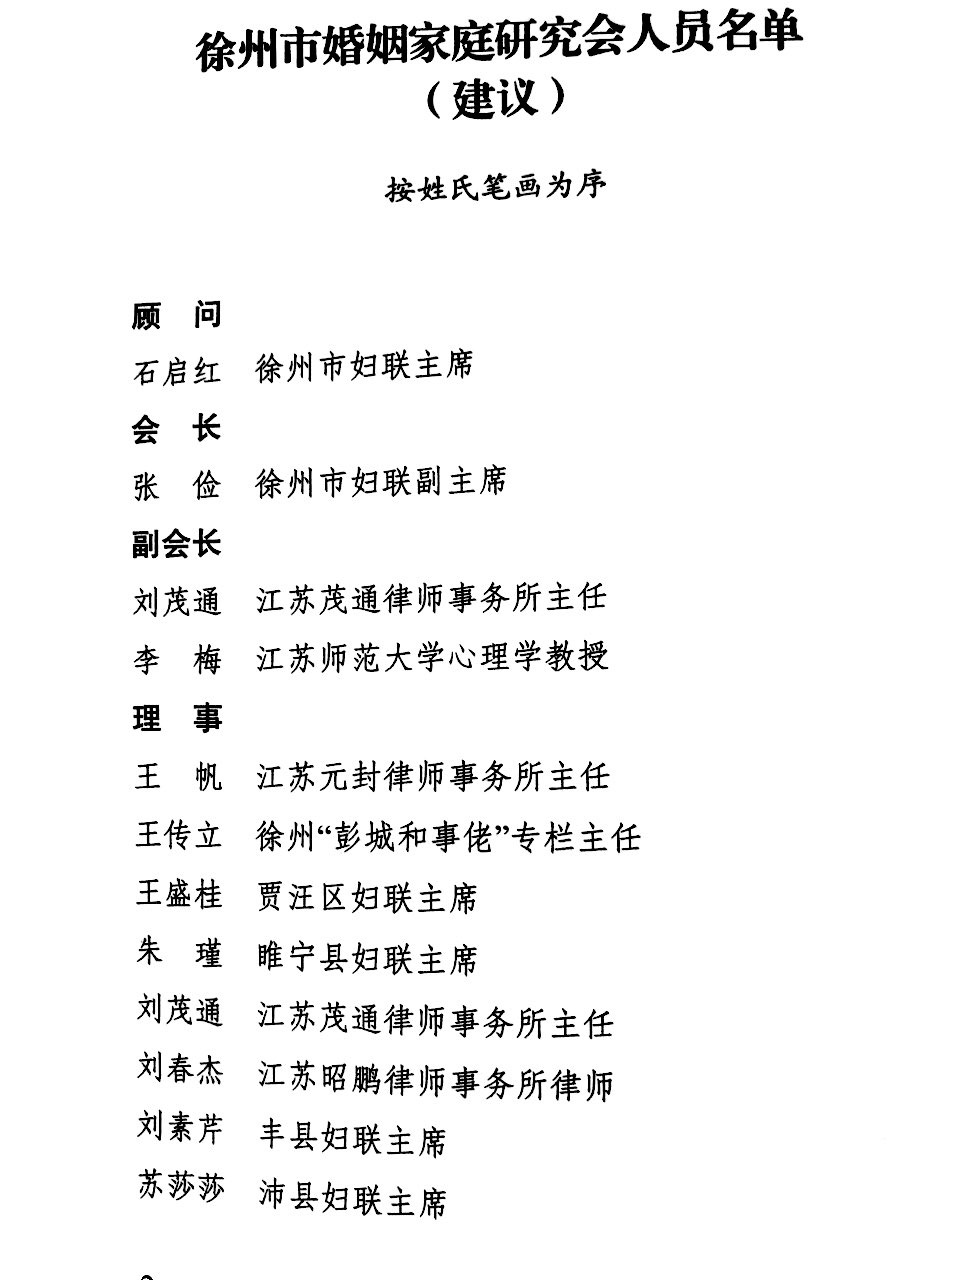 刘春杰律师当选徐州市婚姻家庭研究会理事